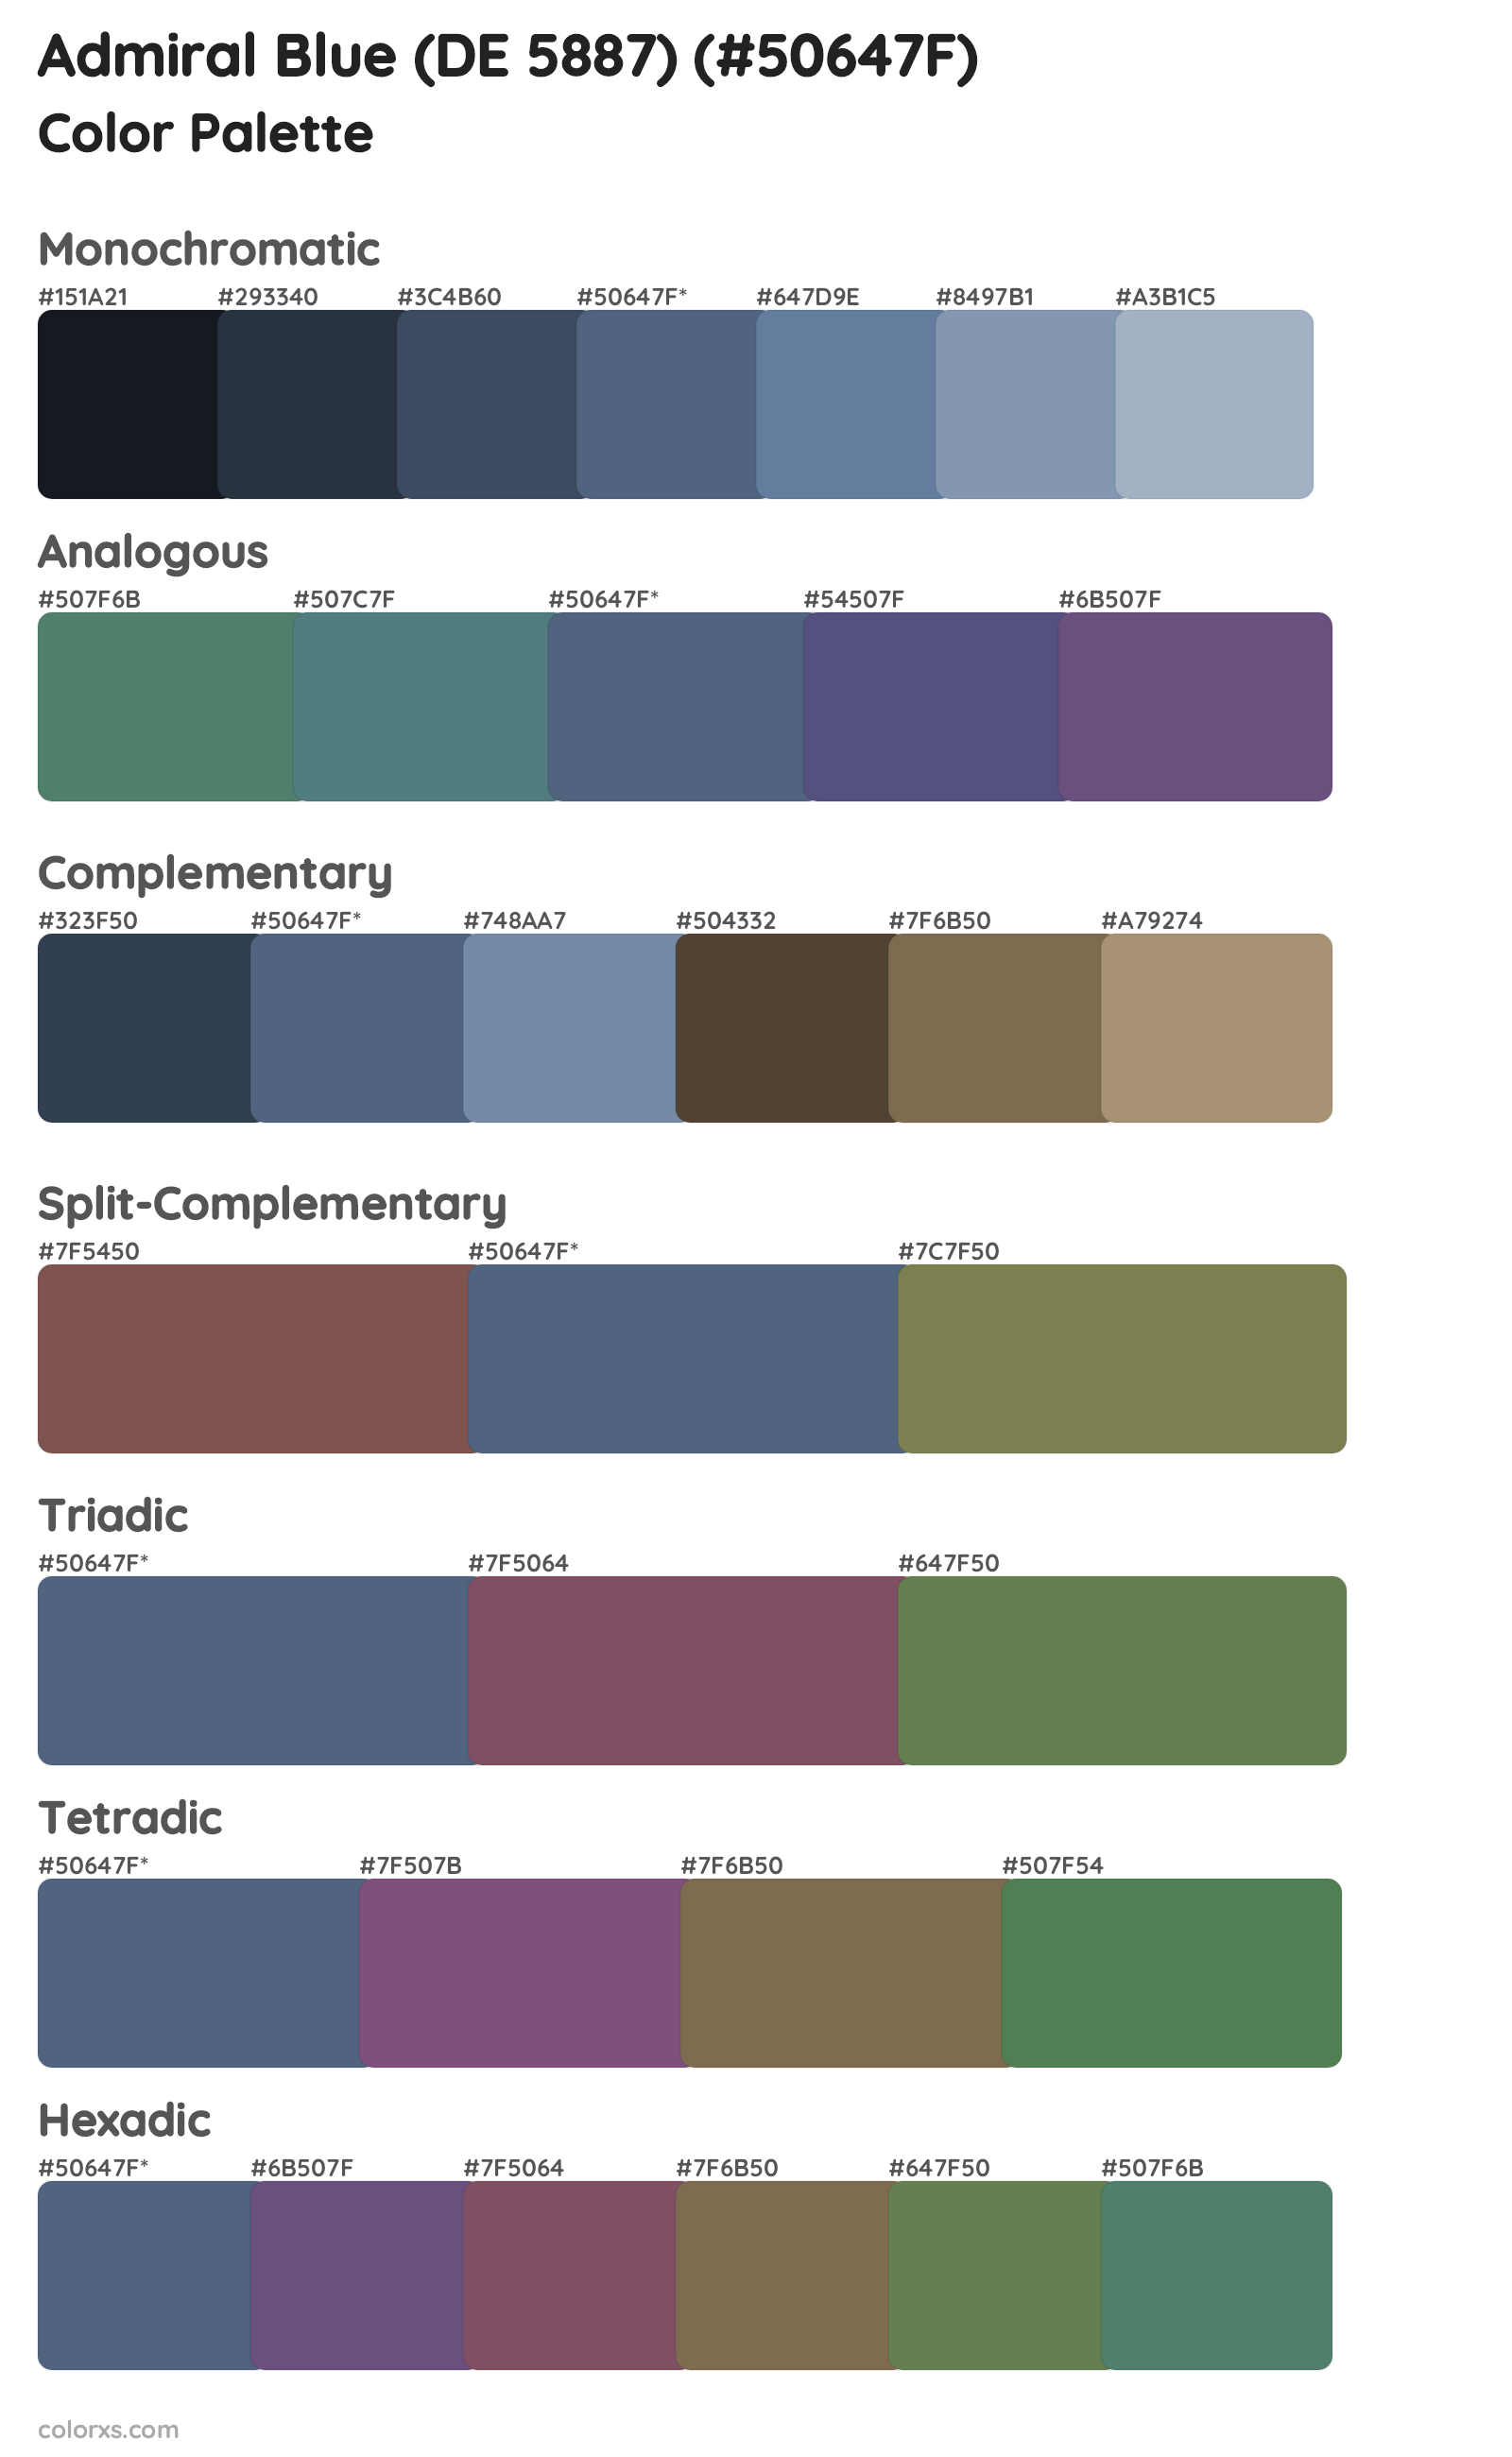 Admiral Blue (DE 5887) Color Scheme Palettes